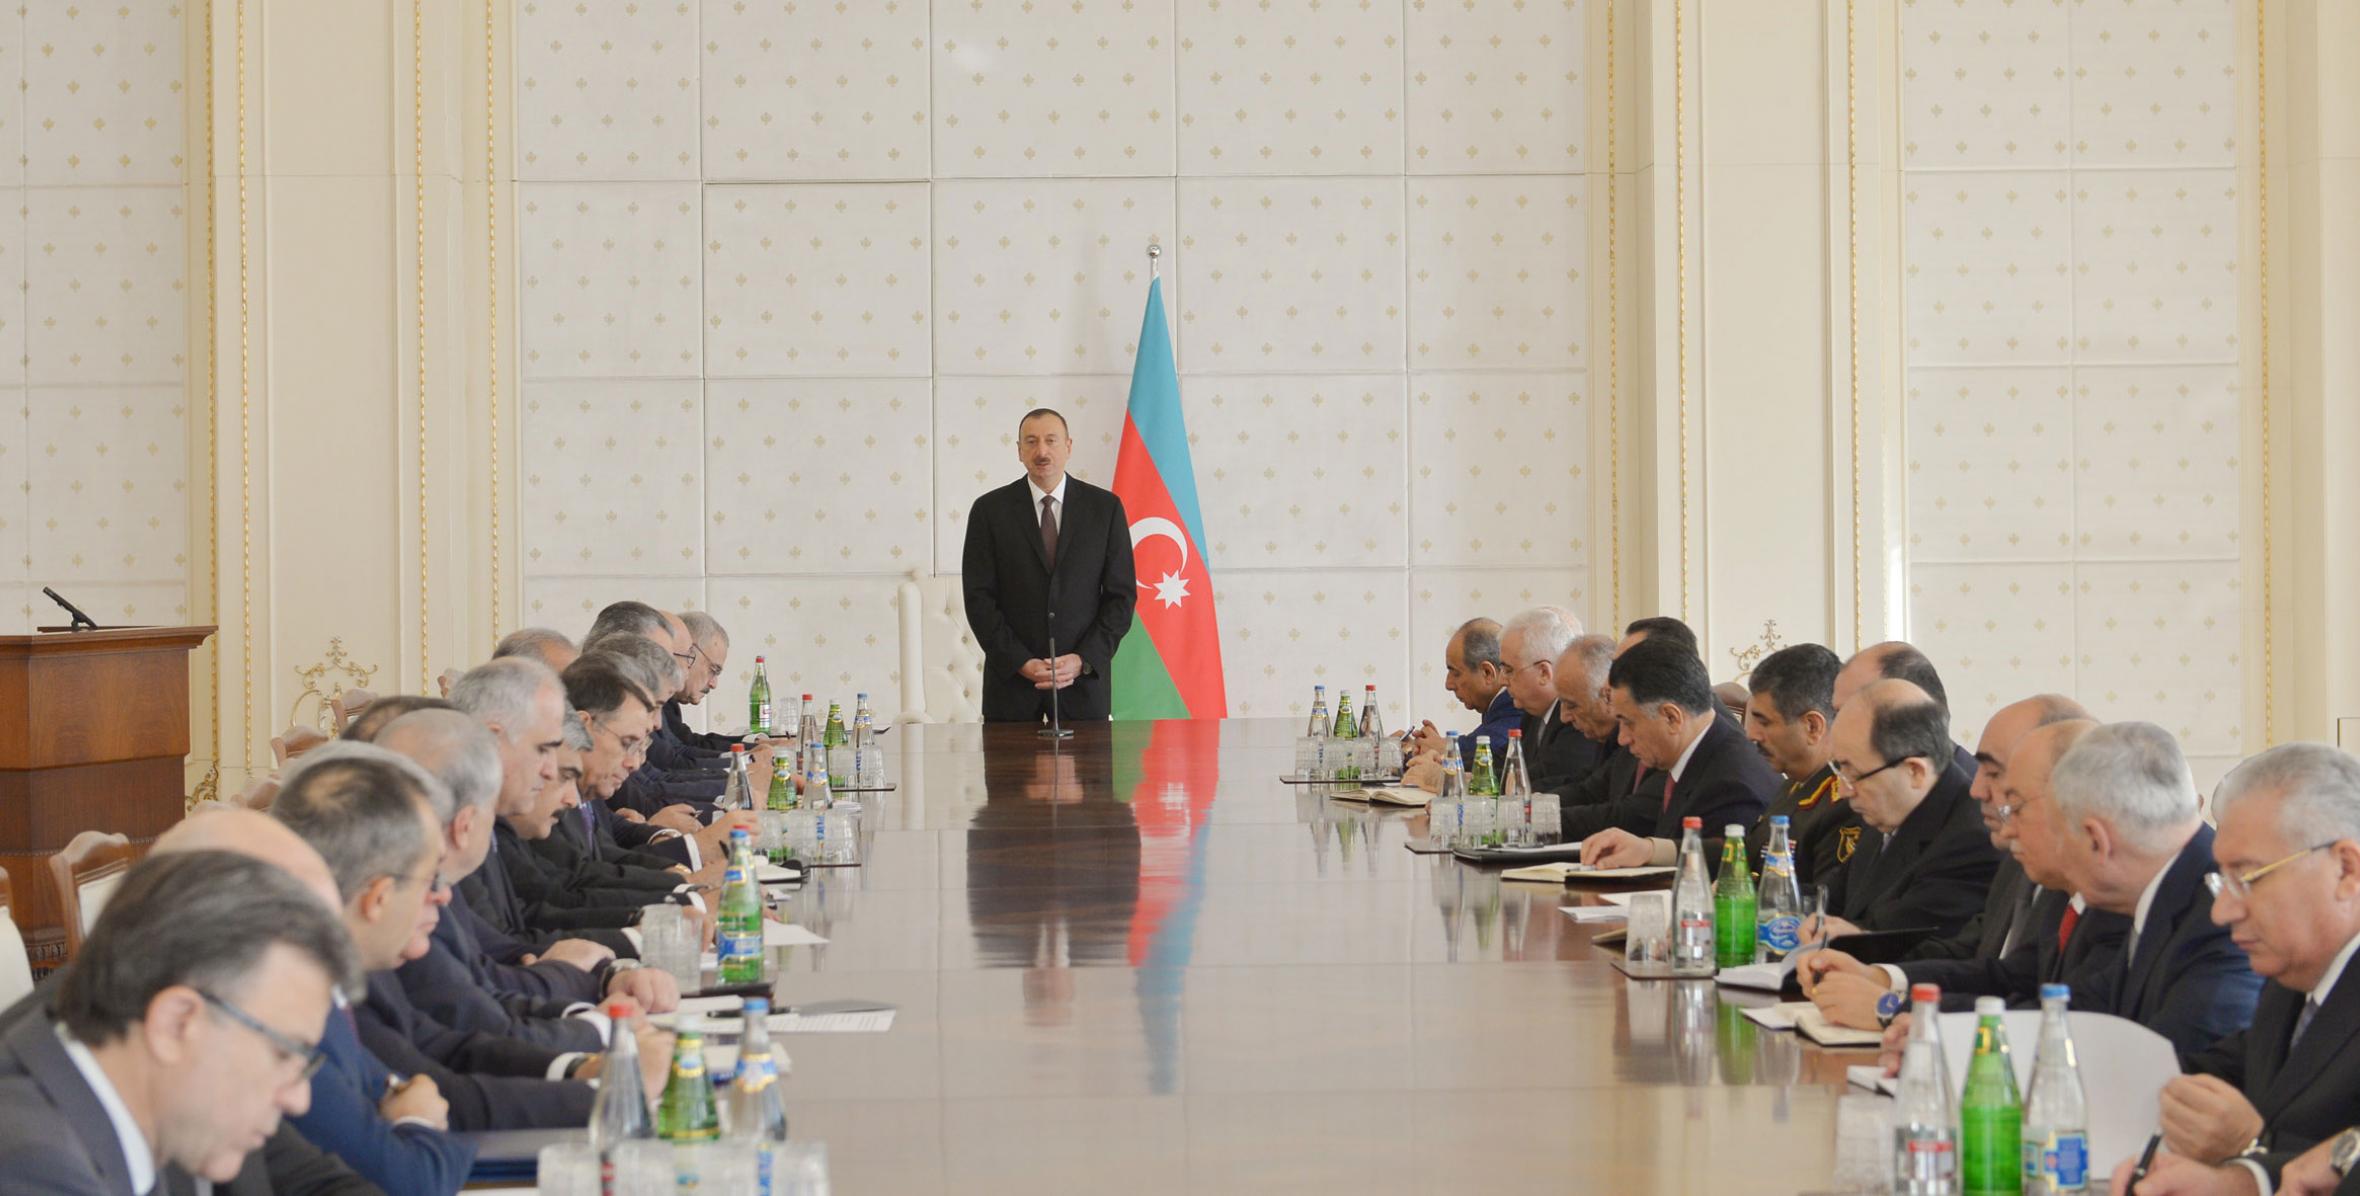 Вступительная речь Ильхама Алиева на  заседании Кабинета Министров, посвященном итогам социально-экономического развития в первом квартале 2014 года и предстоящим задачам